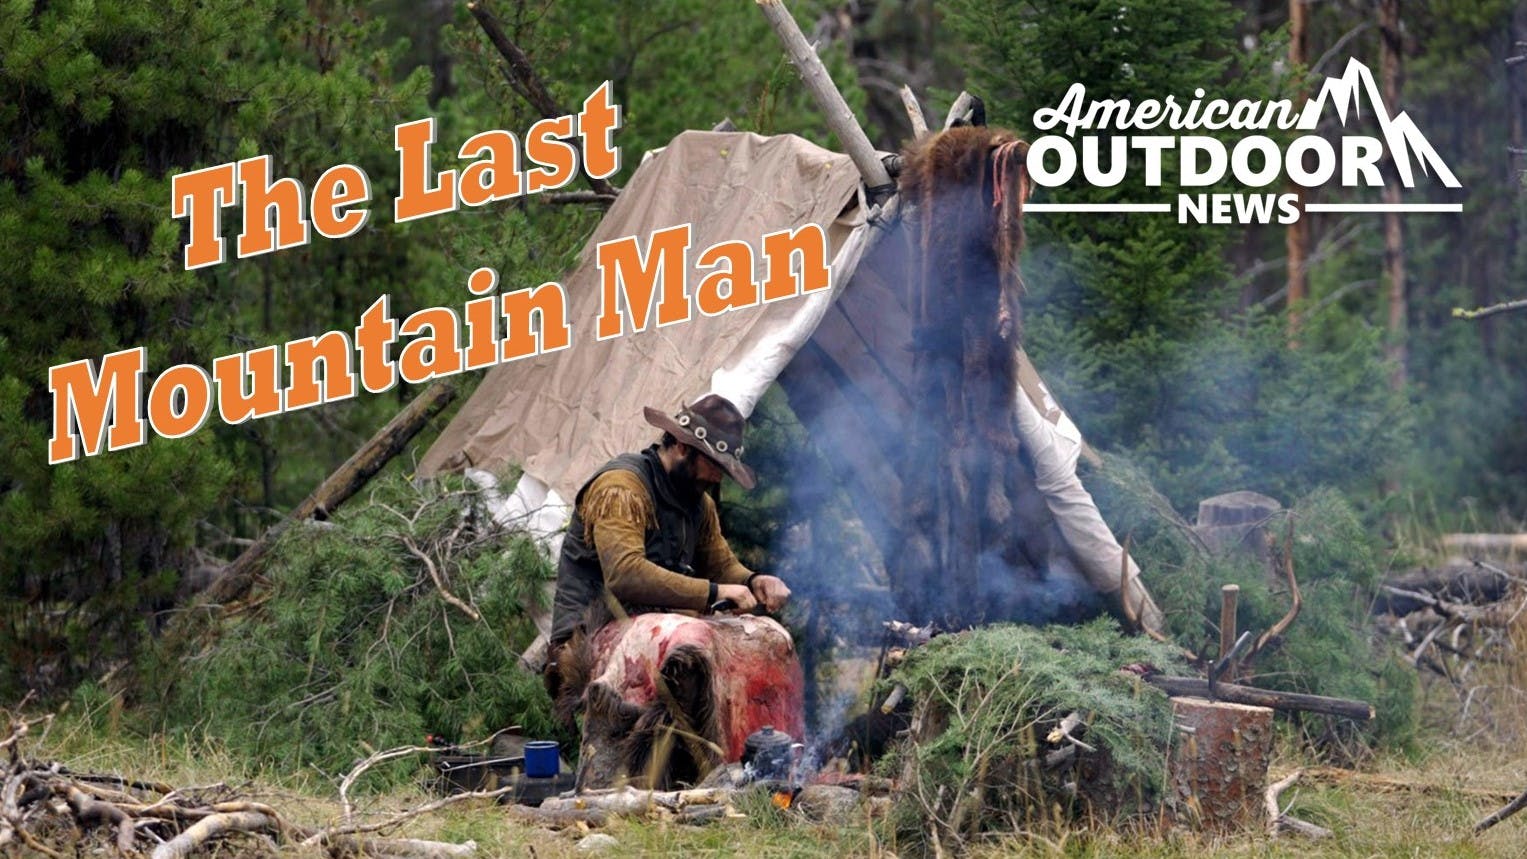 The Last Mountain Man